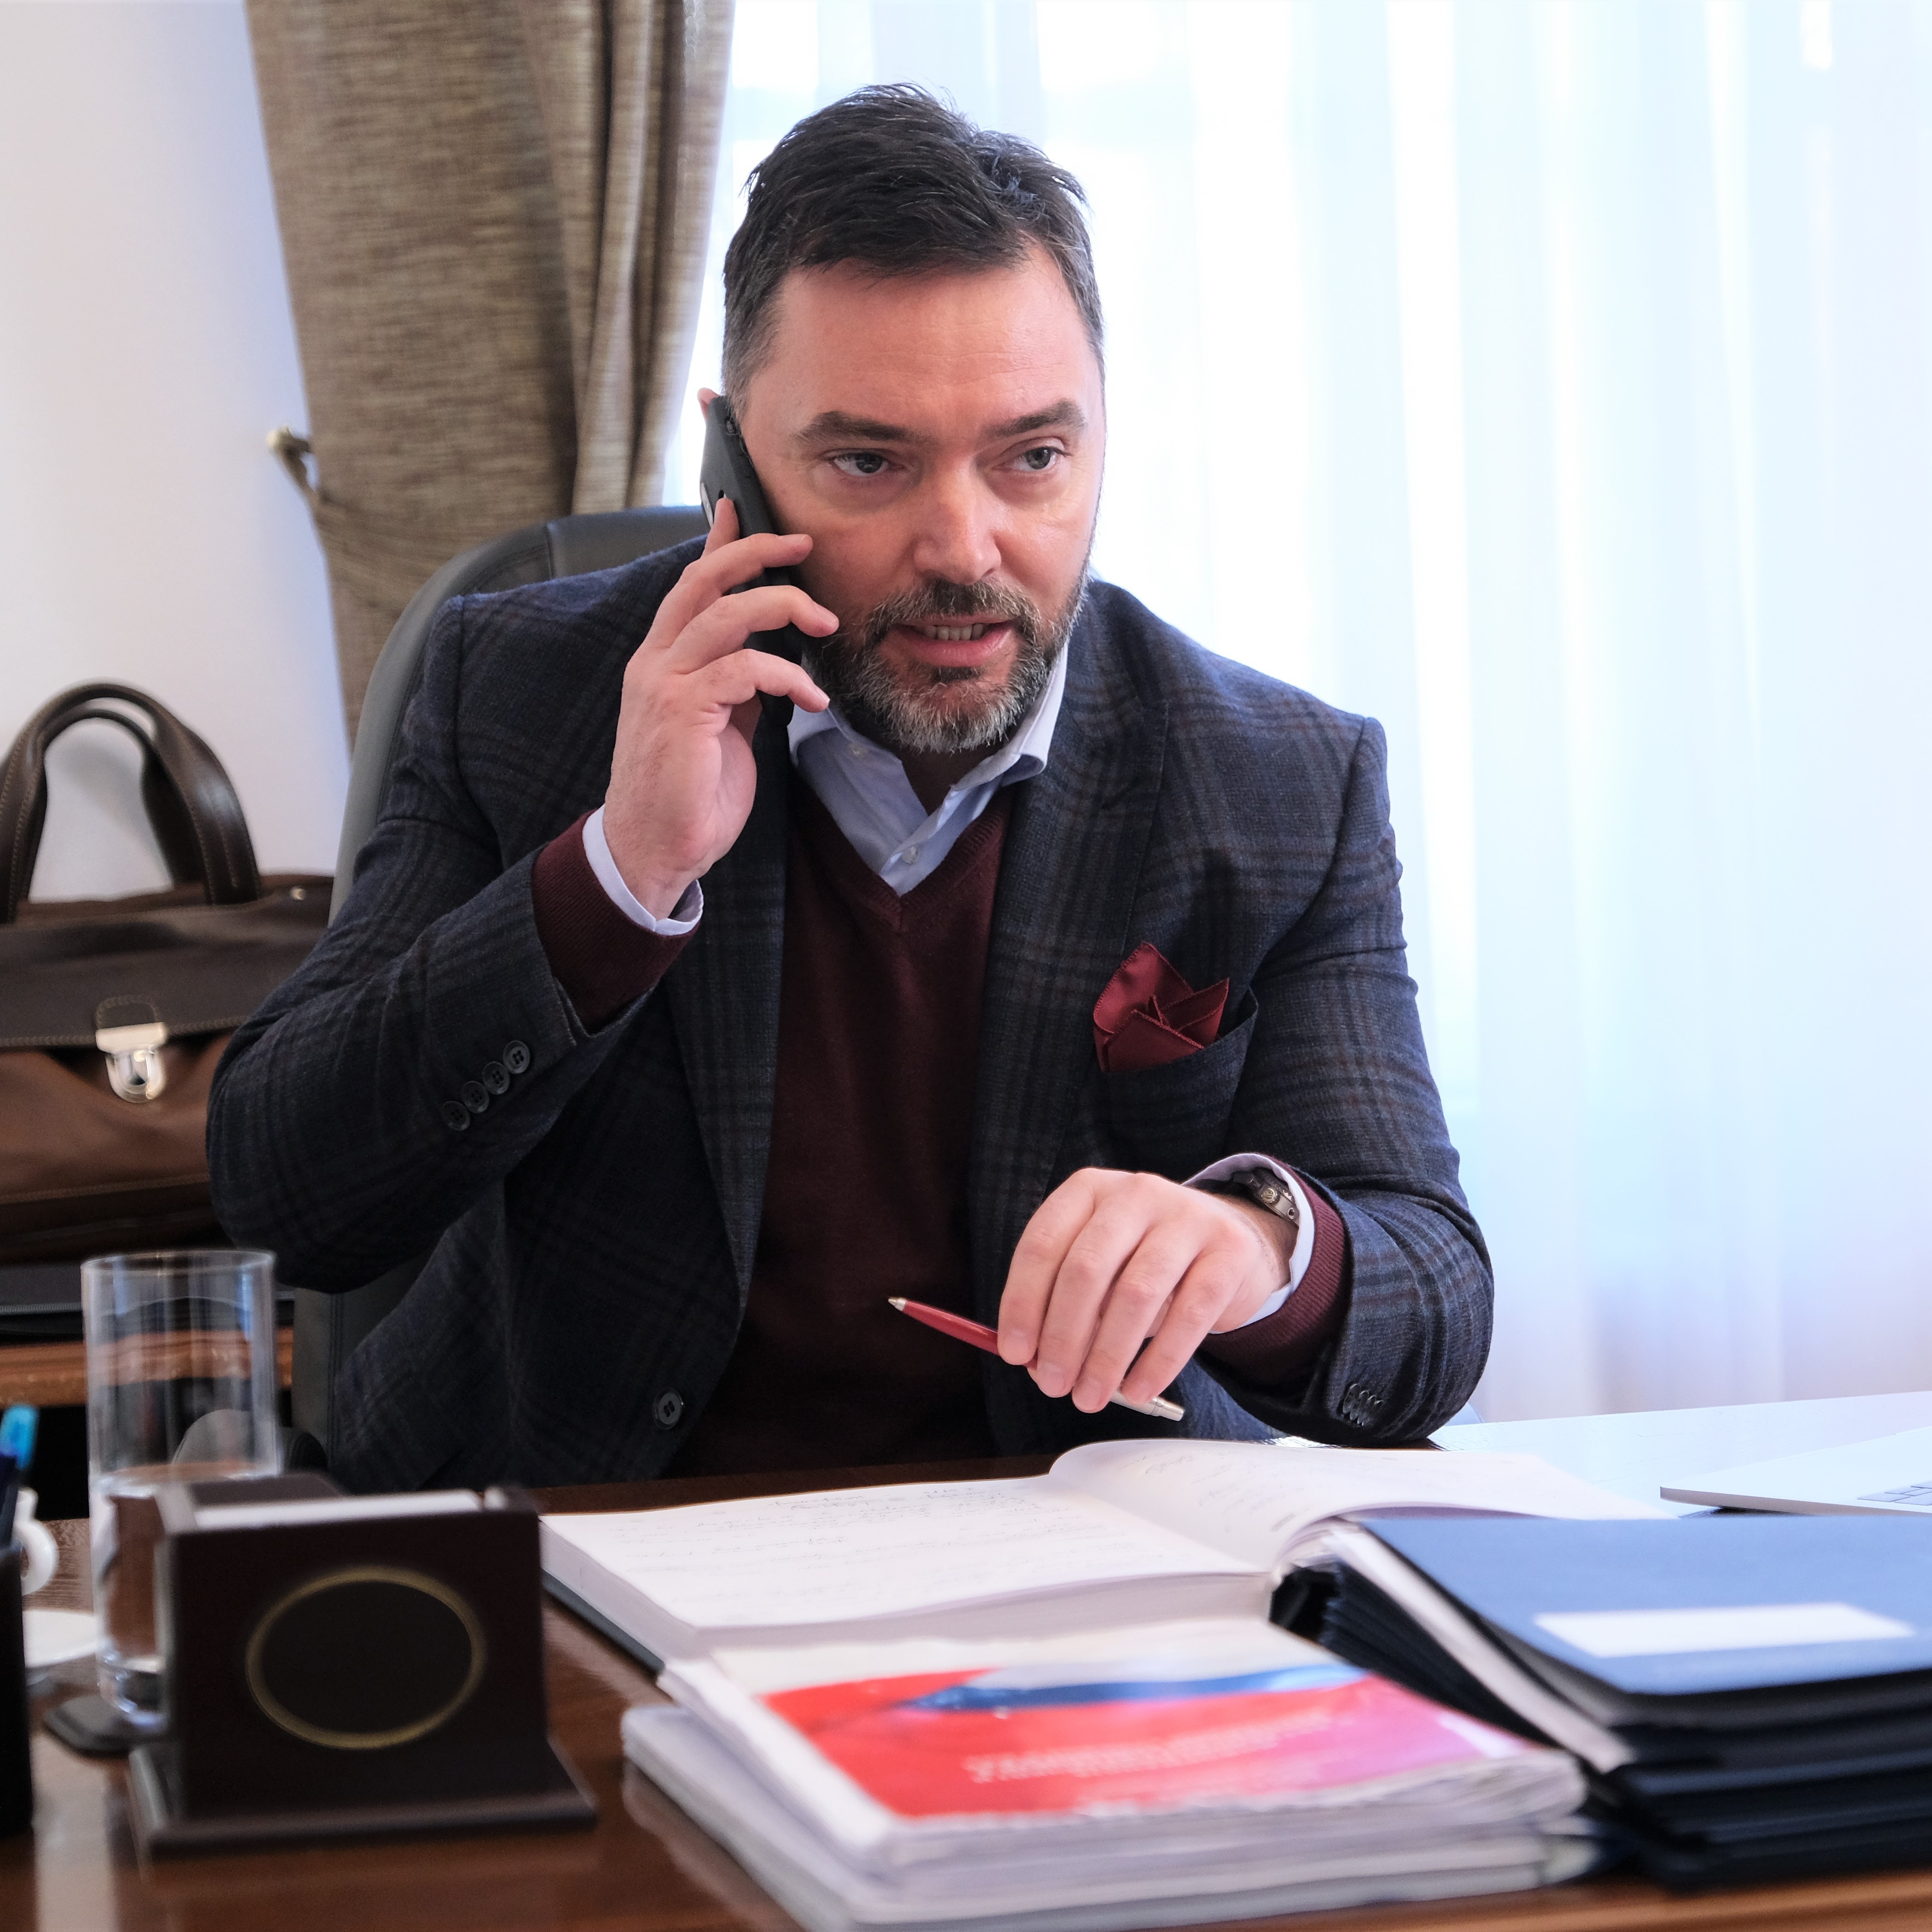 Picture for Ministar Košarac razgovarao sa hrvatskim ministrom Ćorićem o izgradnji spornog odlagališta na Trgovskoj gori